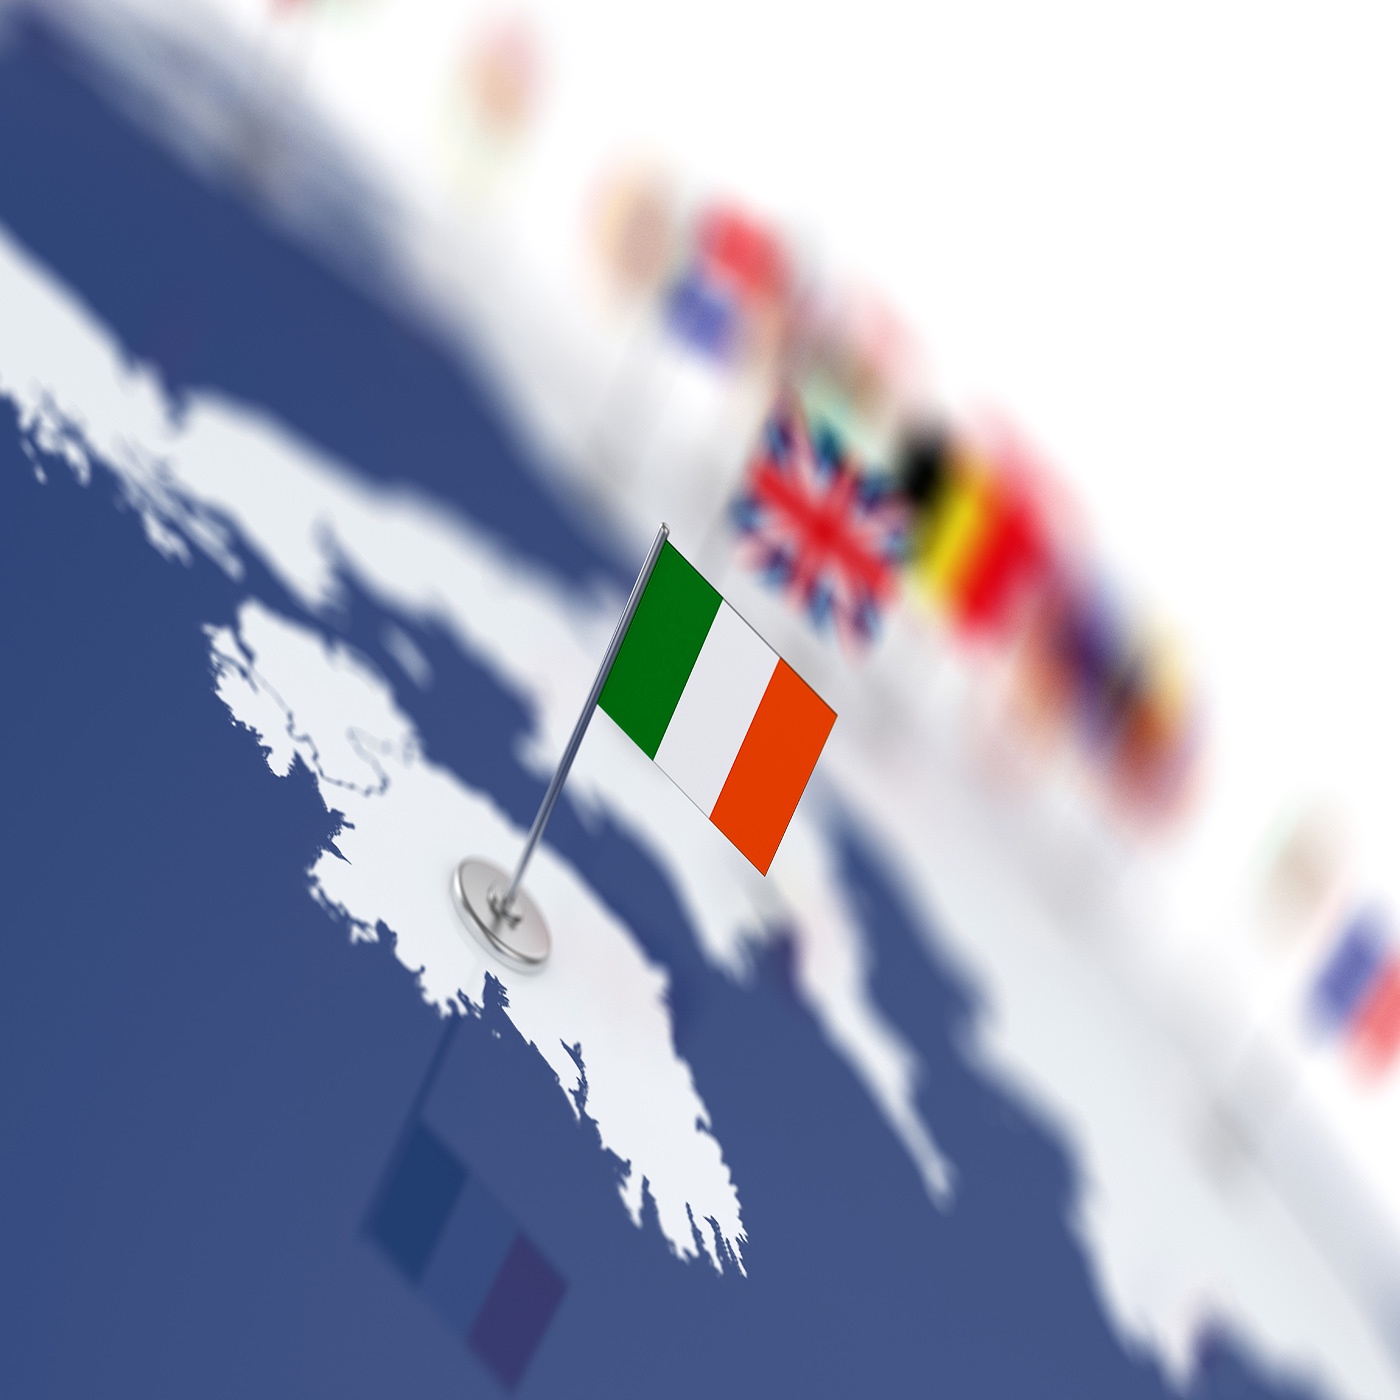 26. #GemeinsamInternational - Marktchancen Irland: Bald die grüne Wasserstoff-Insel?